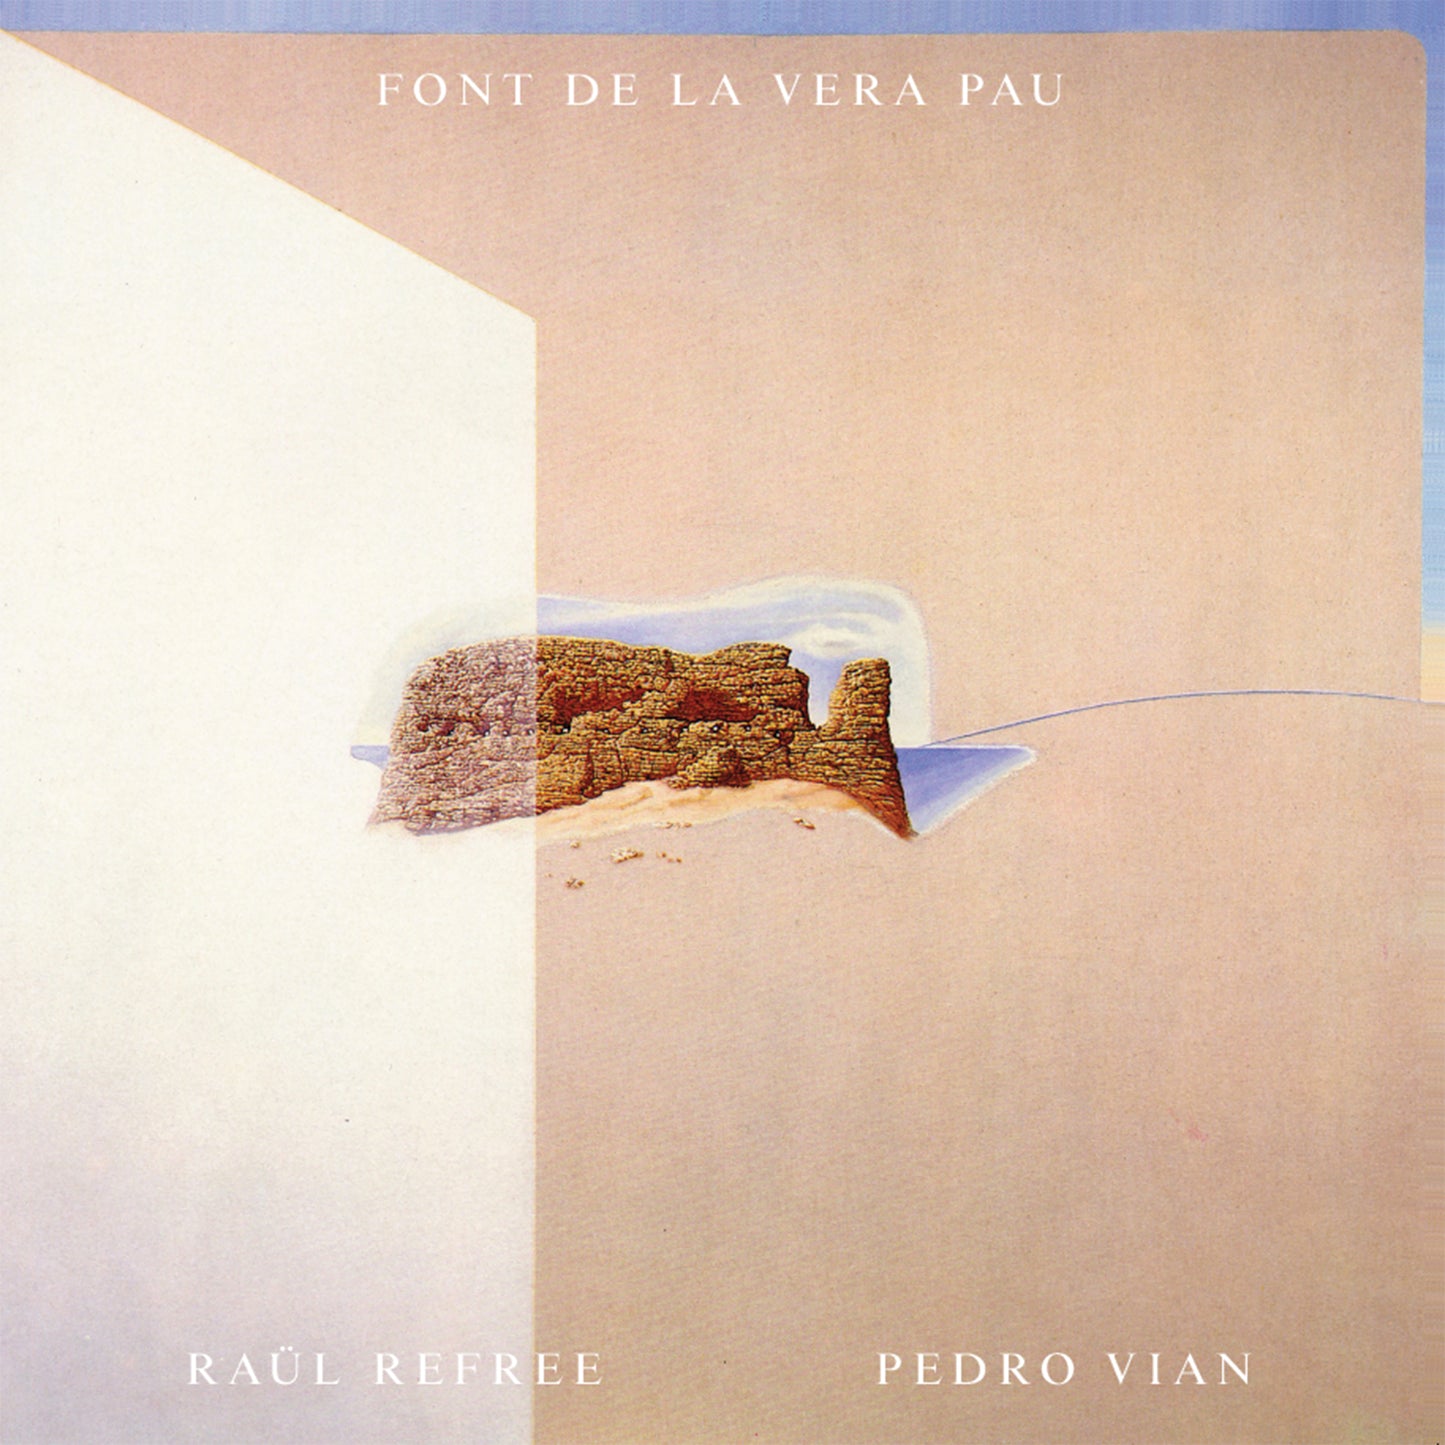 "Font de la Vera Pau" - Raül Refree & Pedro Vian Vinyl